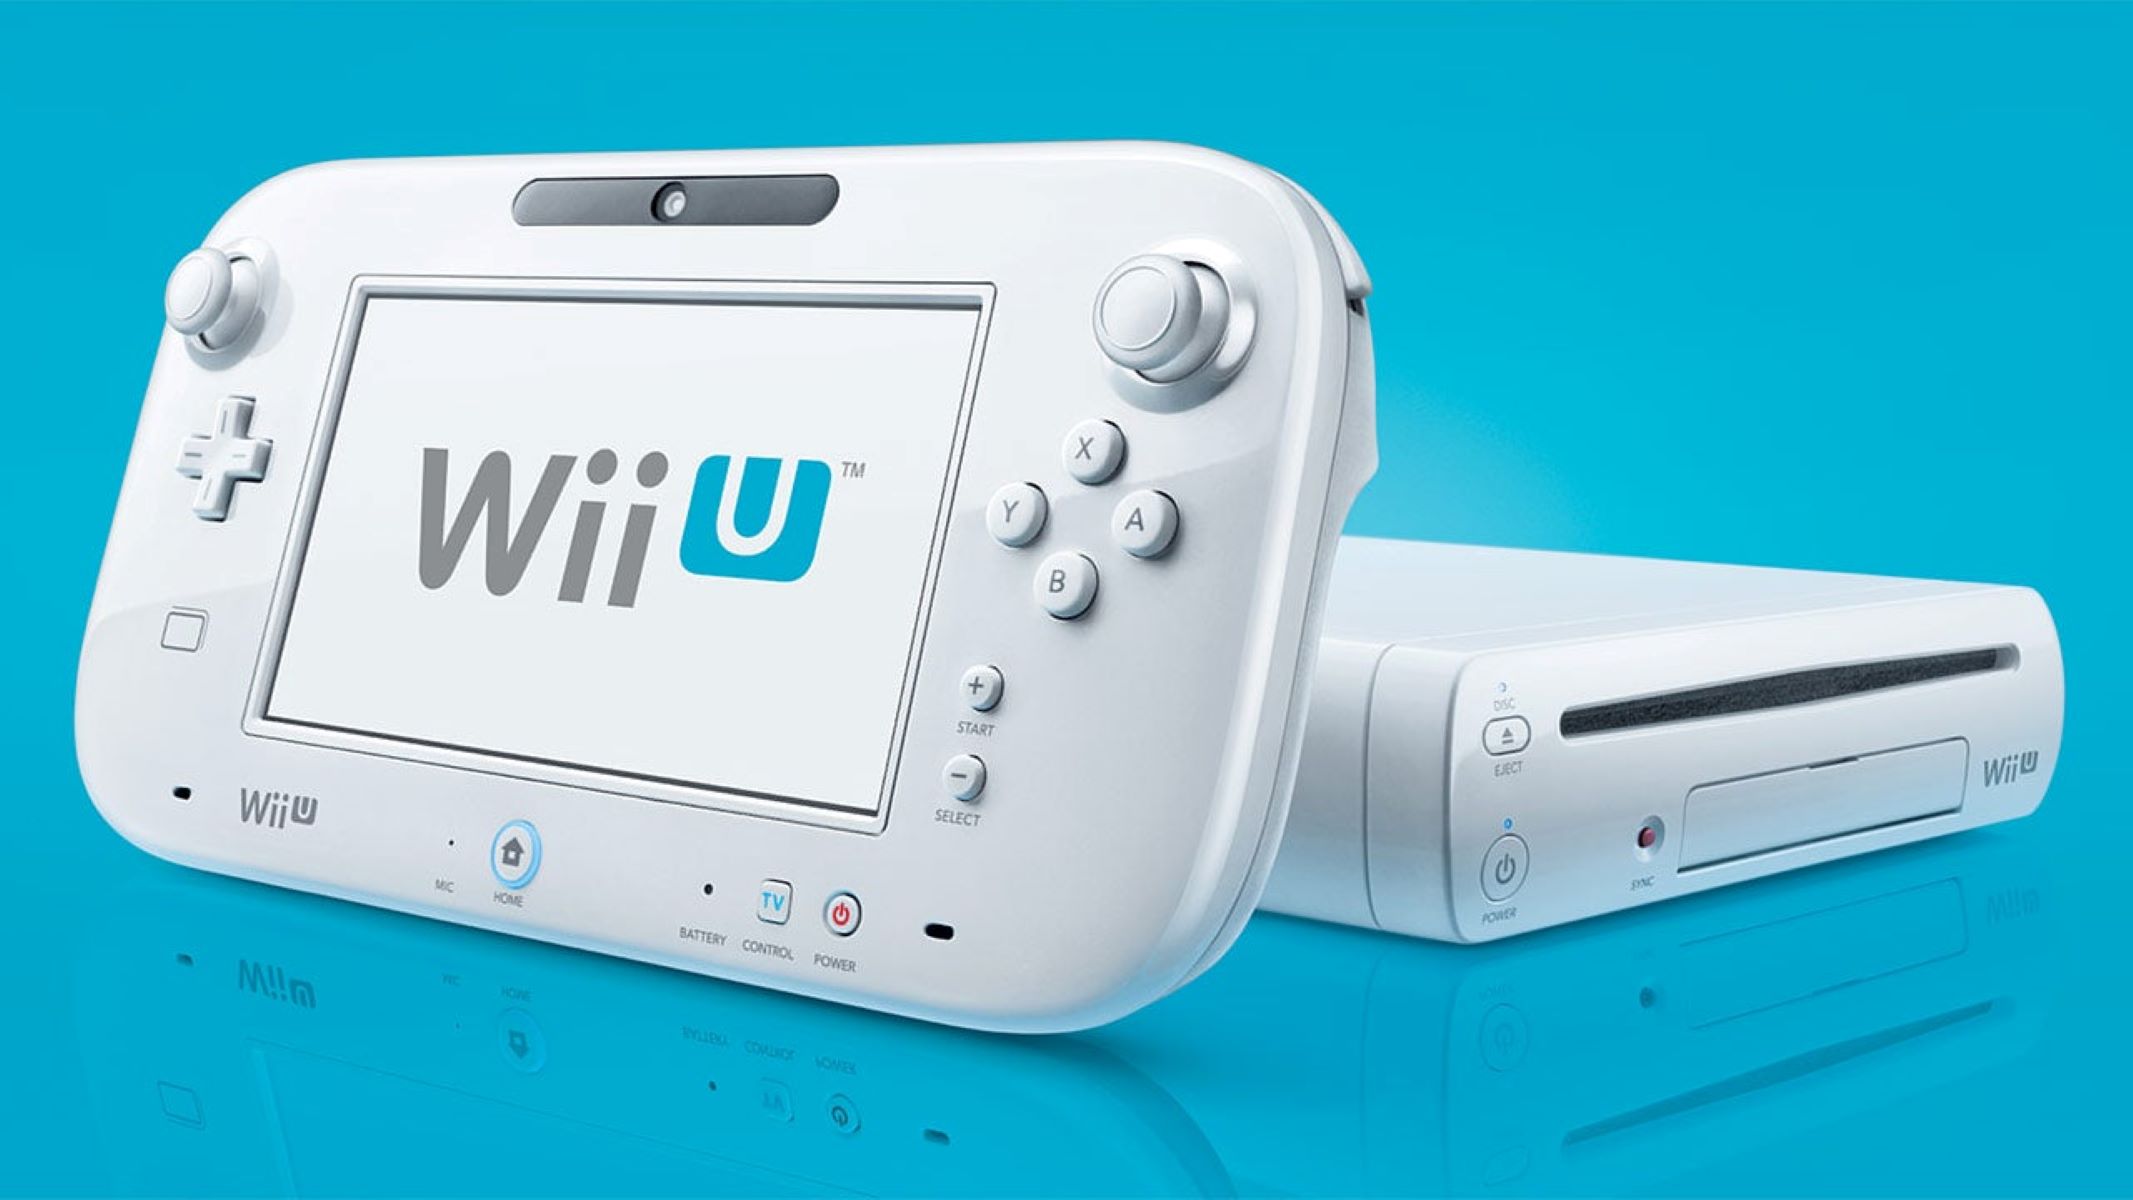 Using Wii U Gamepad On VWii: A Step-by-Step Guide